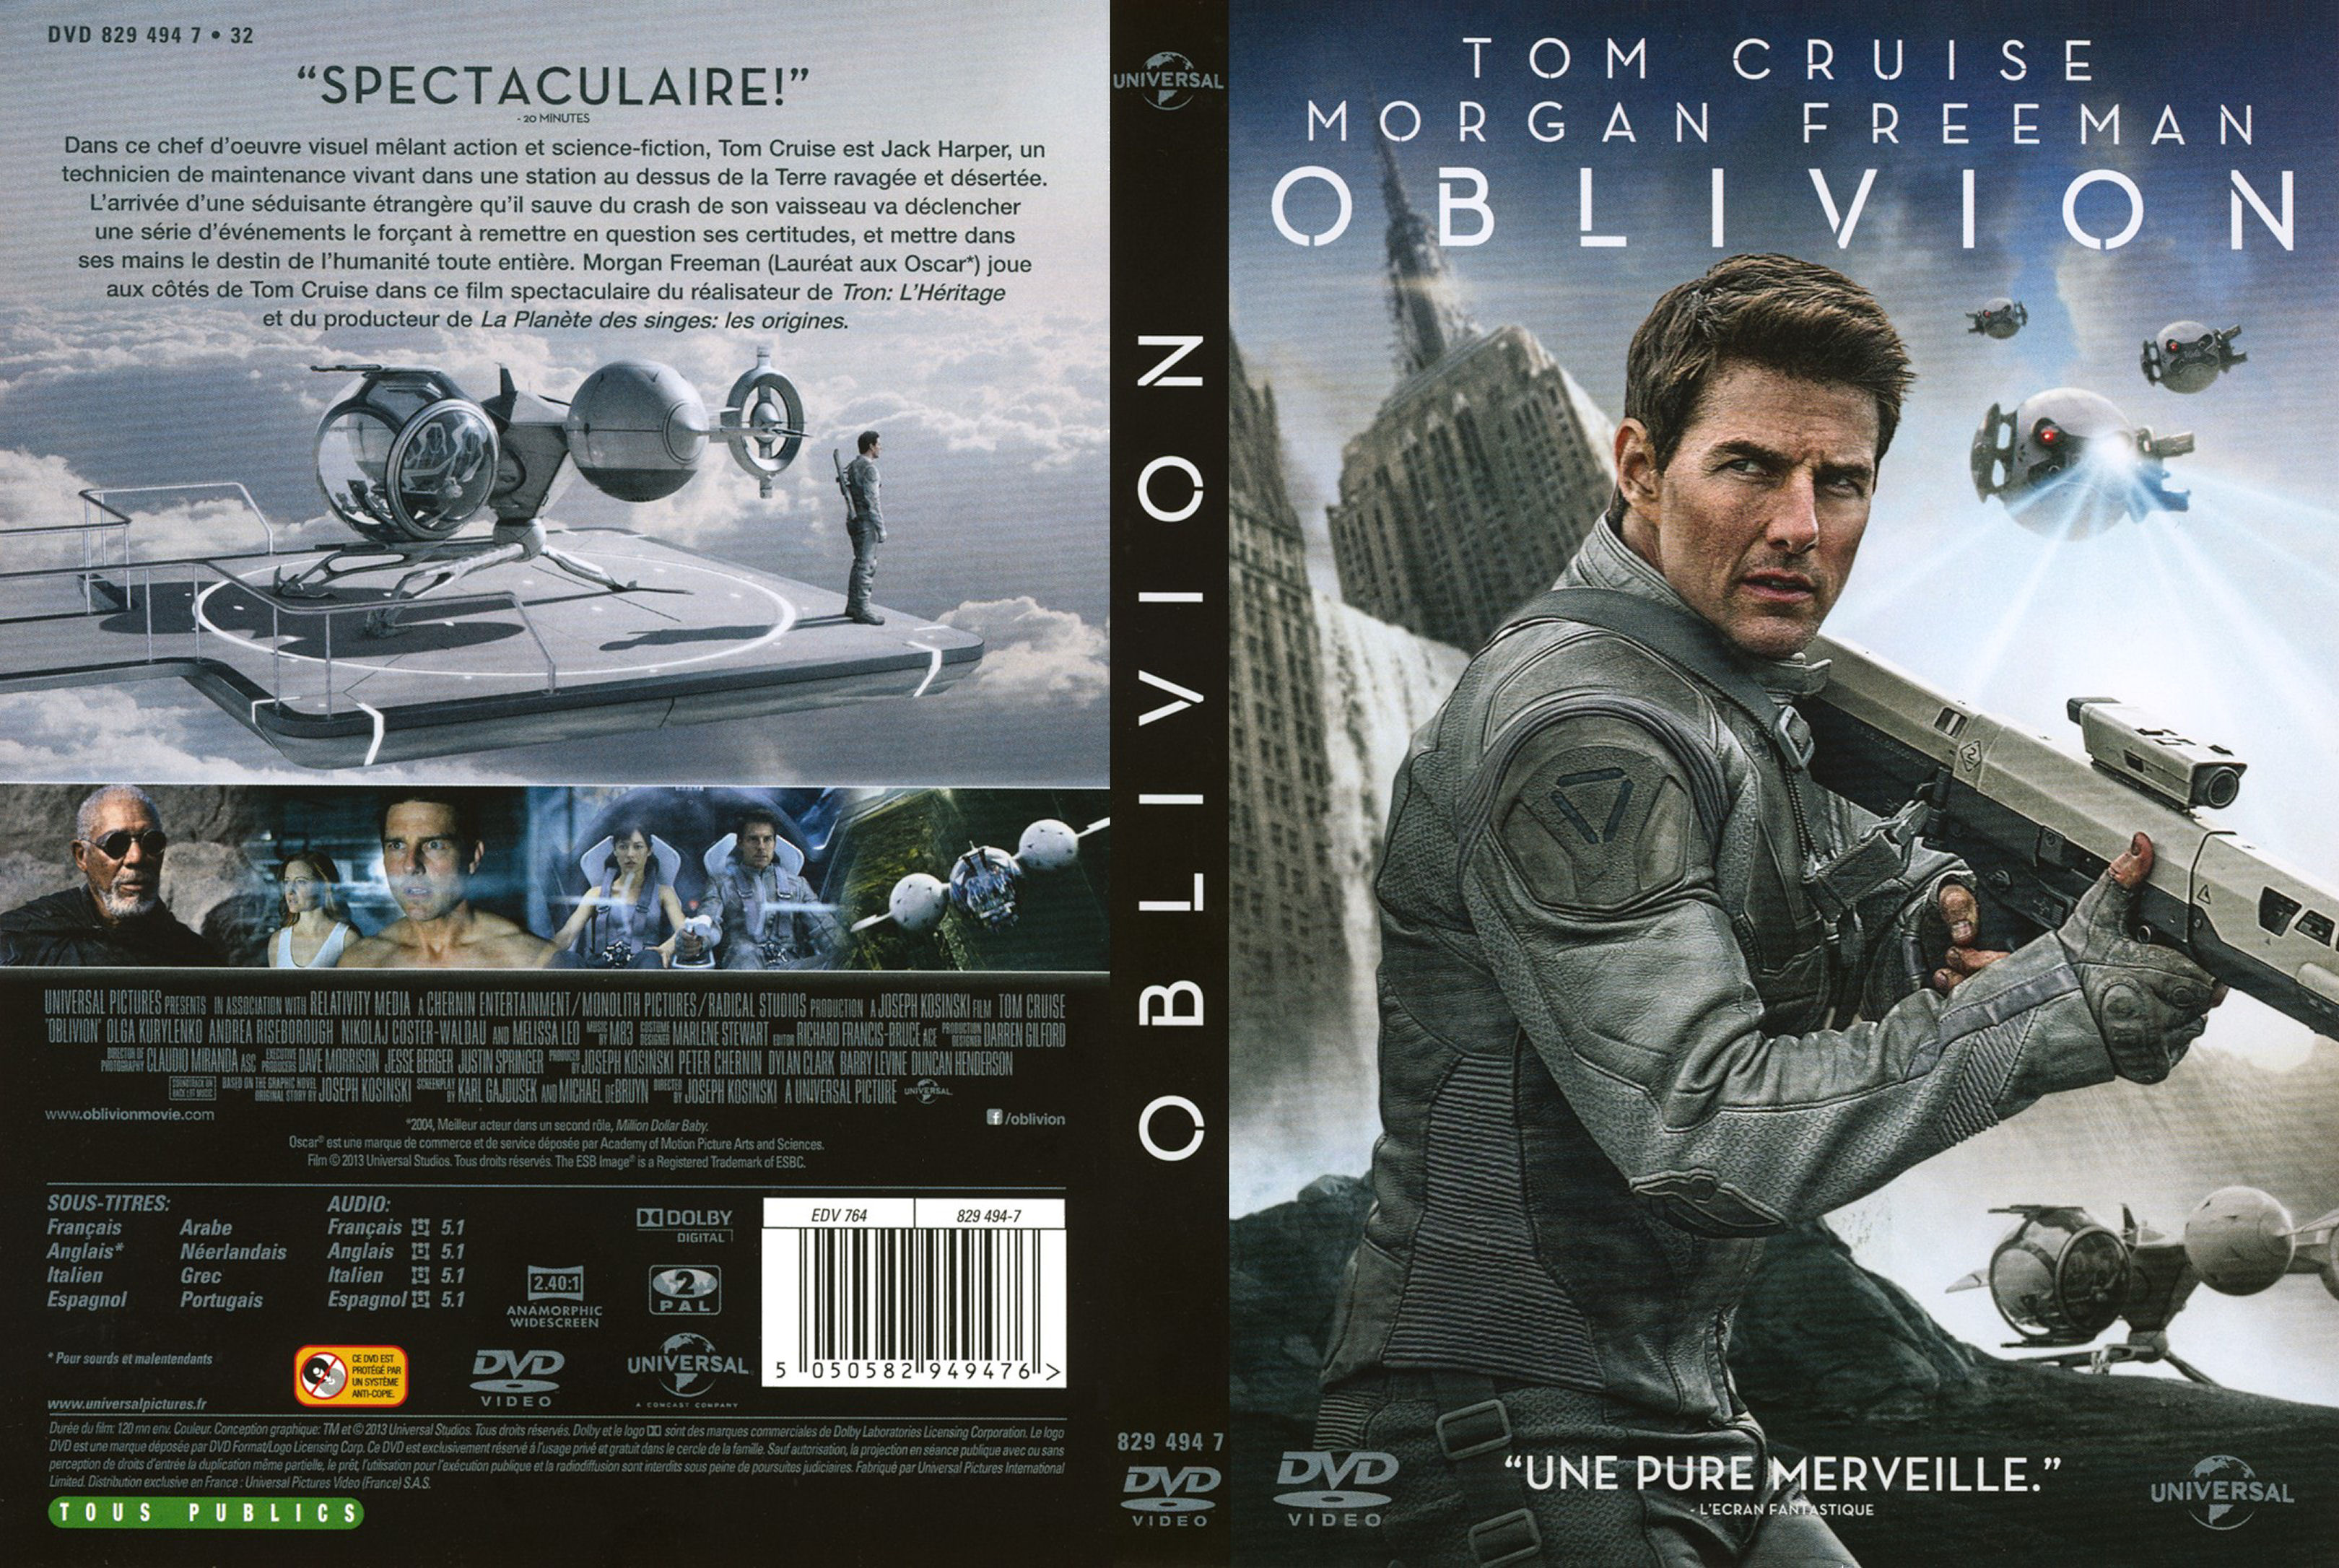 Jaquette DVD Oblivion